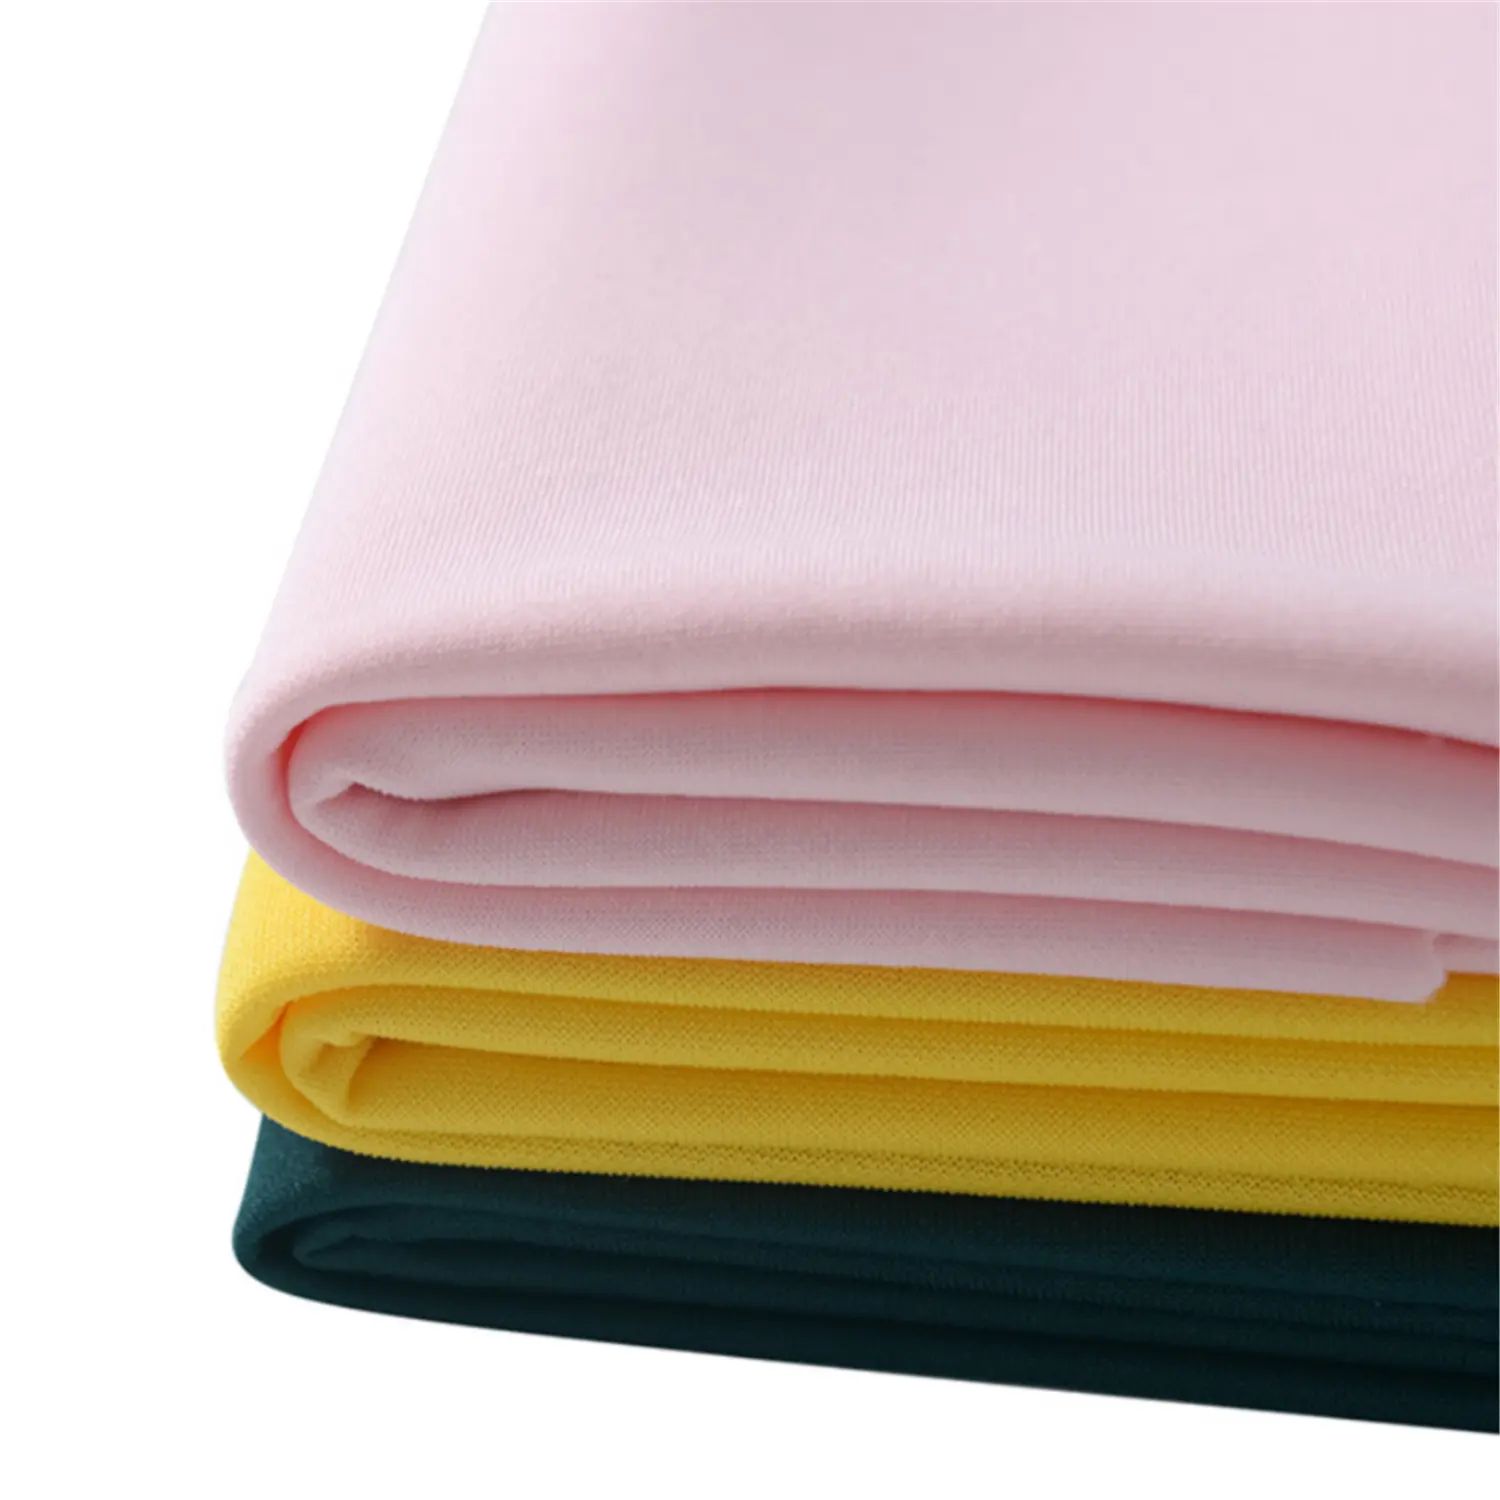 จีนผู้ผลิต Scuba ถักผ้าสีทึบสิ่งทอโพลีเอสเตอร์แปนเด็กซ์ใช้ผ้า